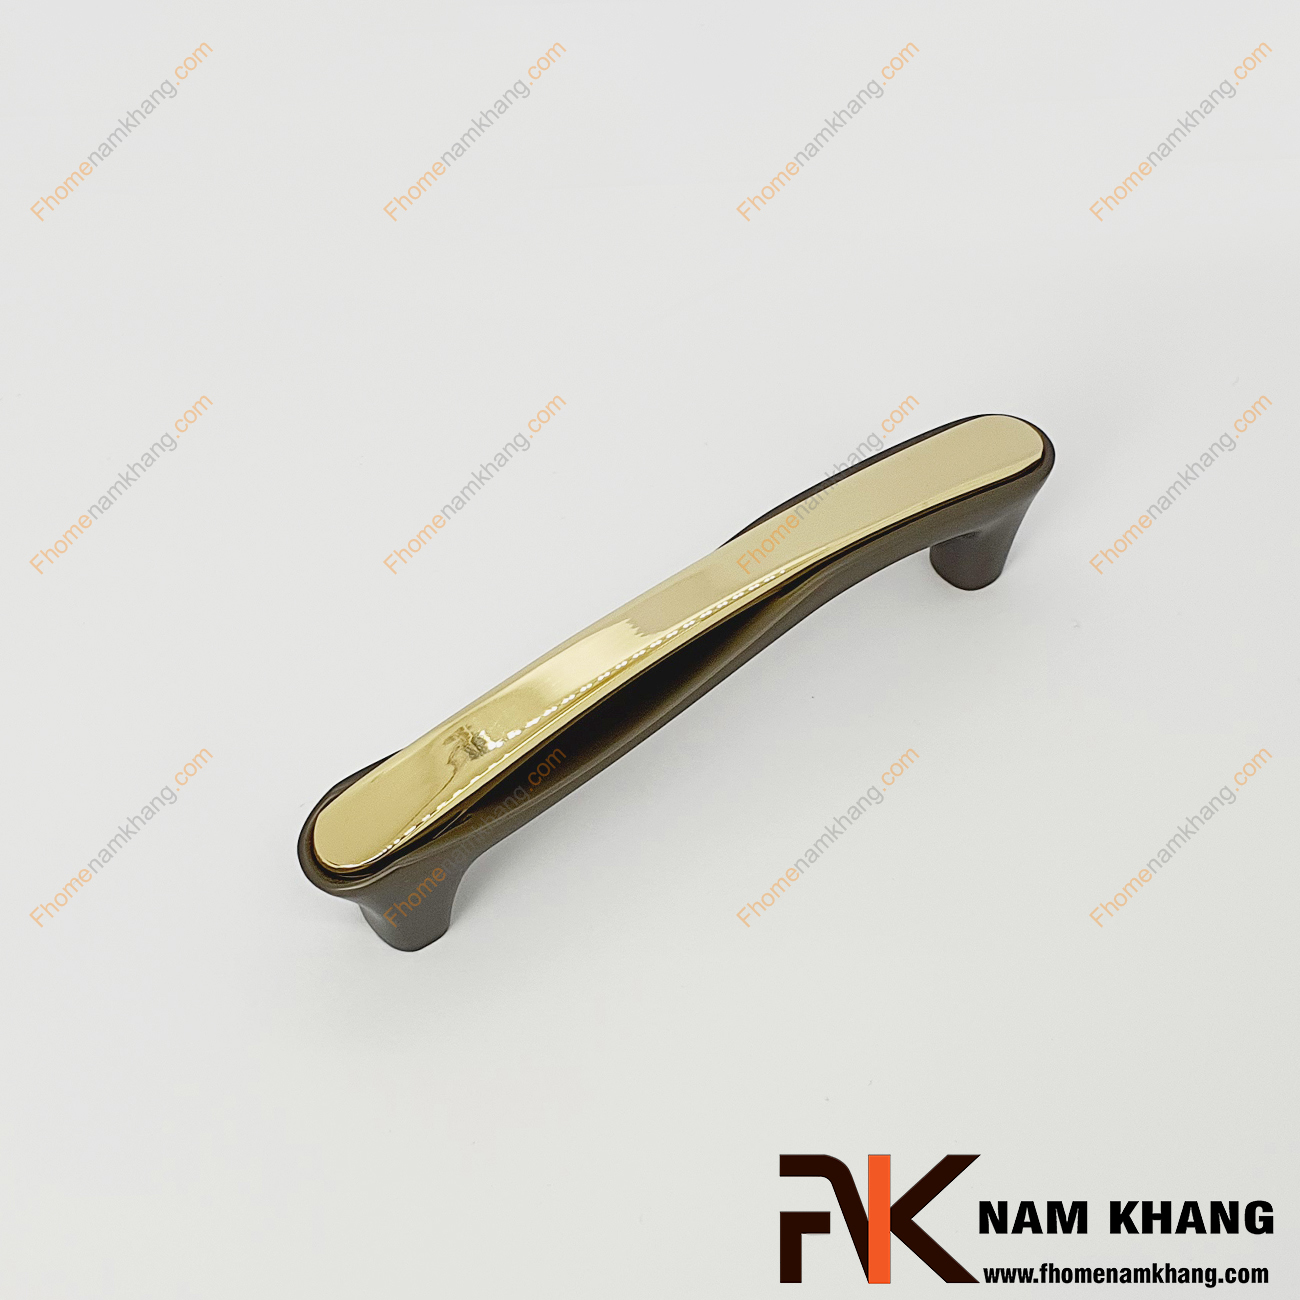 Tay nắm tủ phối hợp cao cấp màu xám vàng NK398-NXV - dòng tay nắm tủ đặc trưng cho thiết kế tay nắm tủ lắp ghép từ 2 phần riêng biệt.